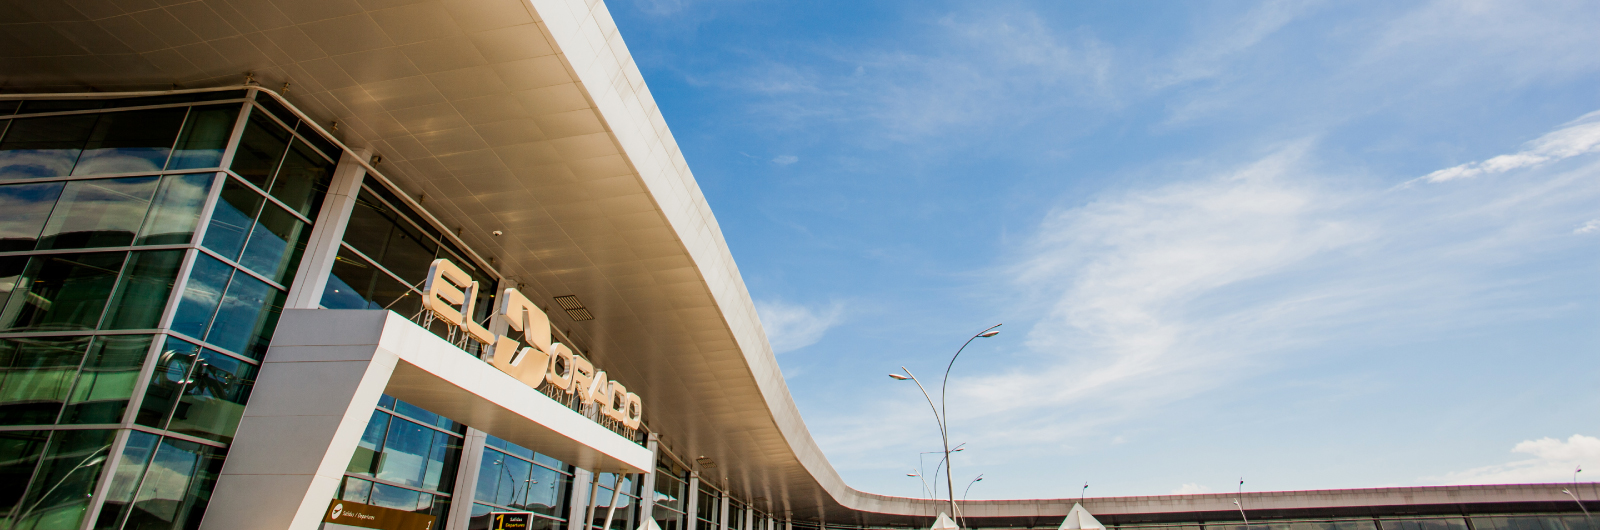 Odinsa Aeropuerto Internacional El Dorado